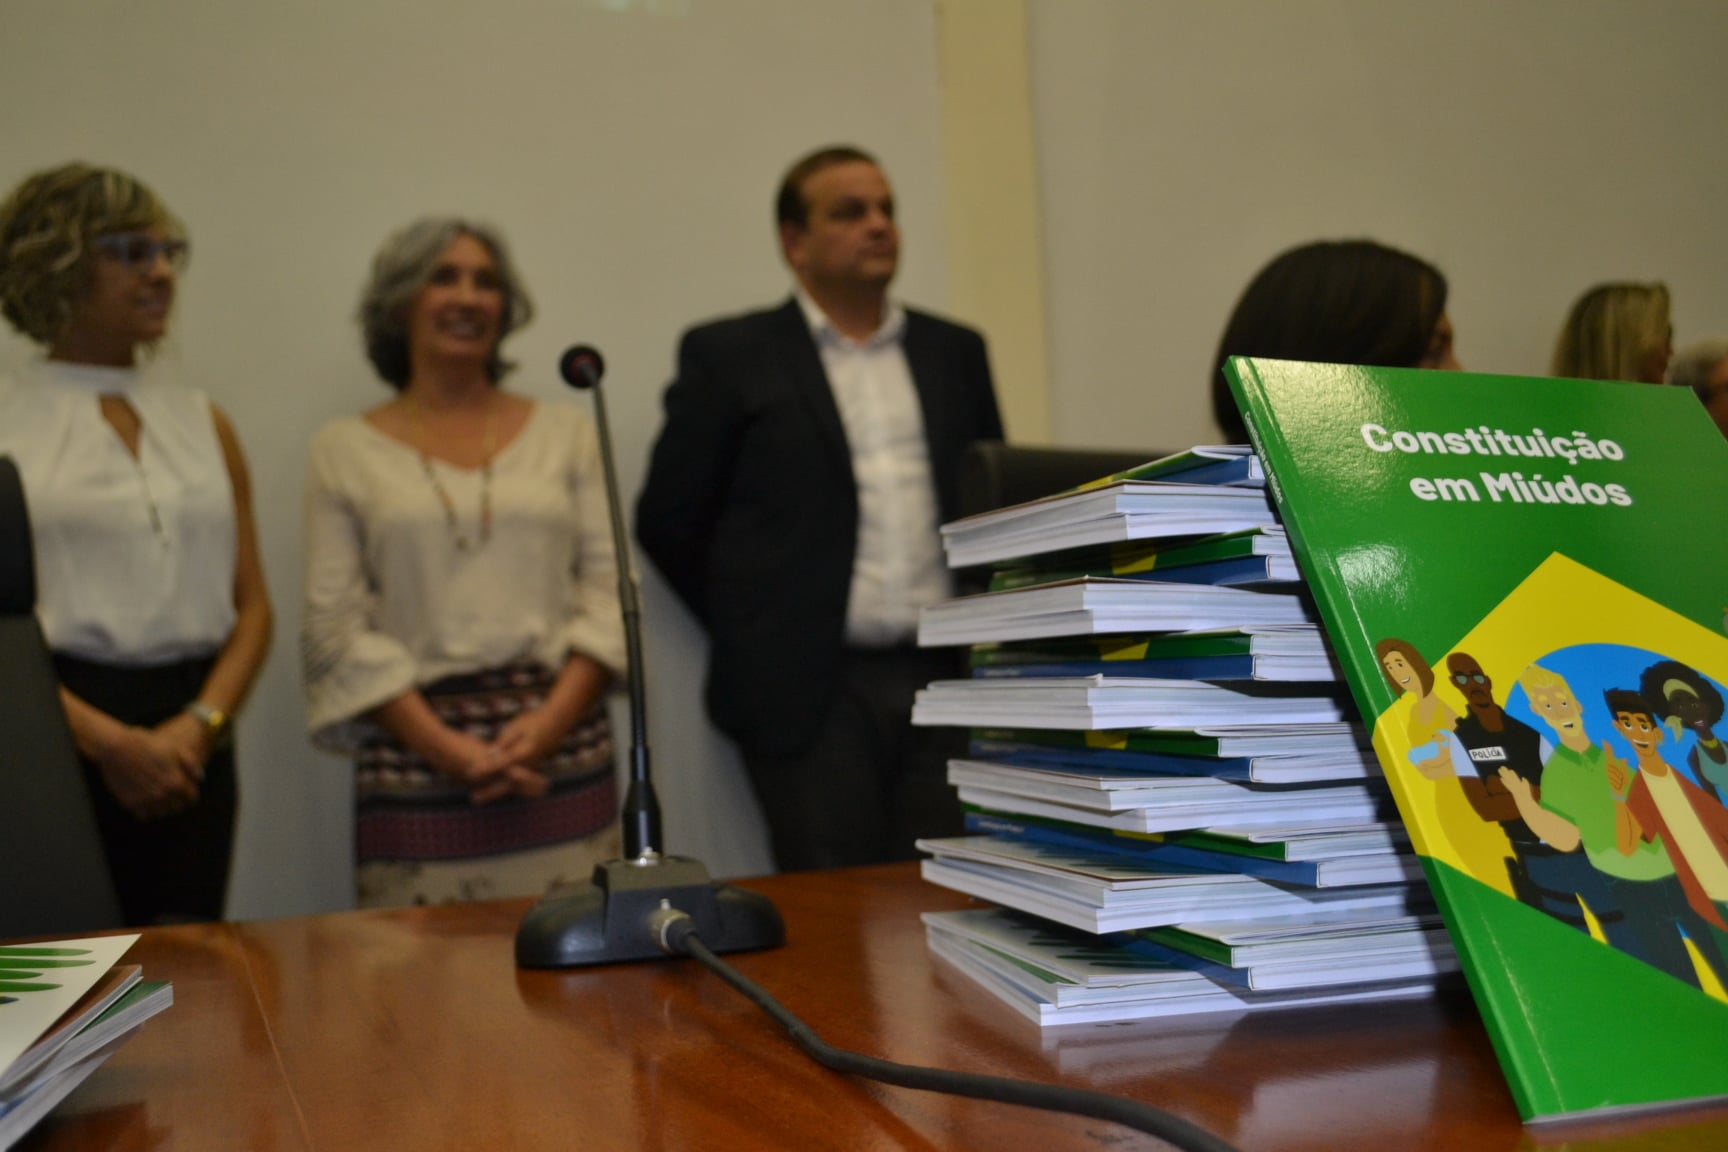 Preparação I GINCANA DO SABER - Entrega de kits de livros sobre a Constituição Federal em Miúdos para escolas públicas do município